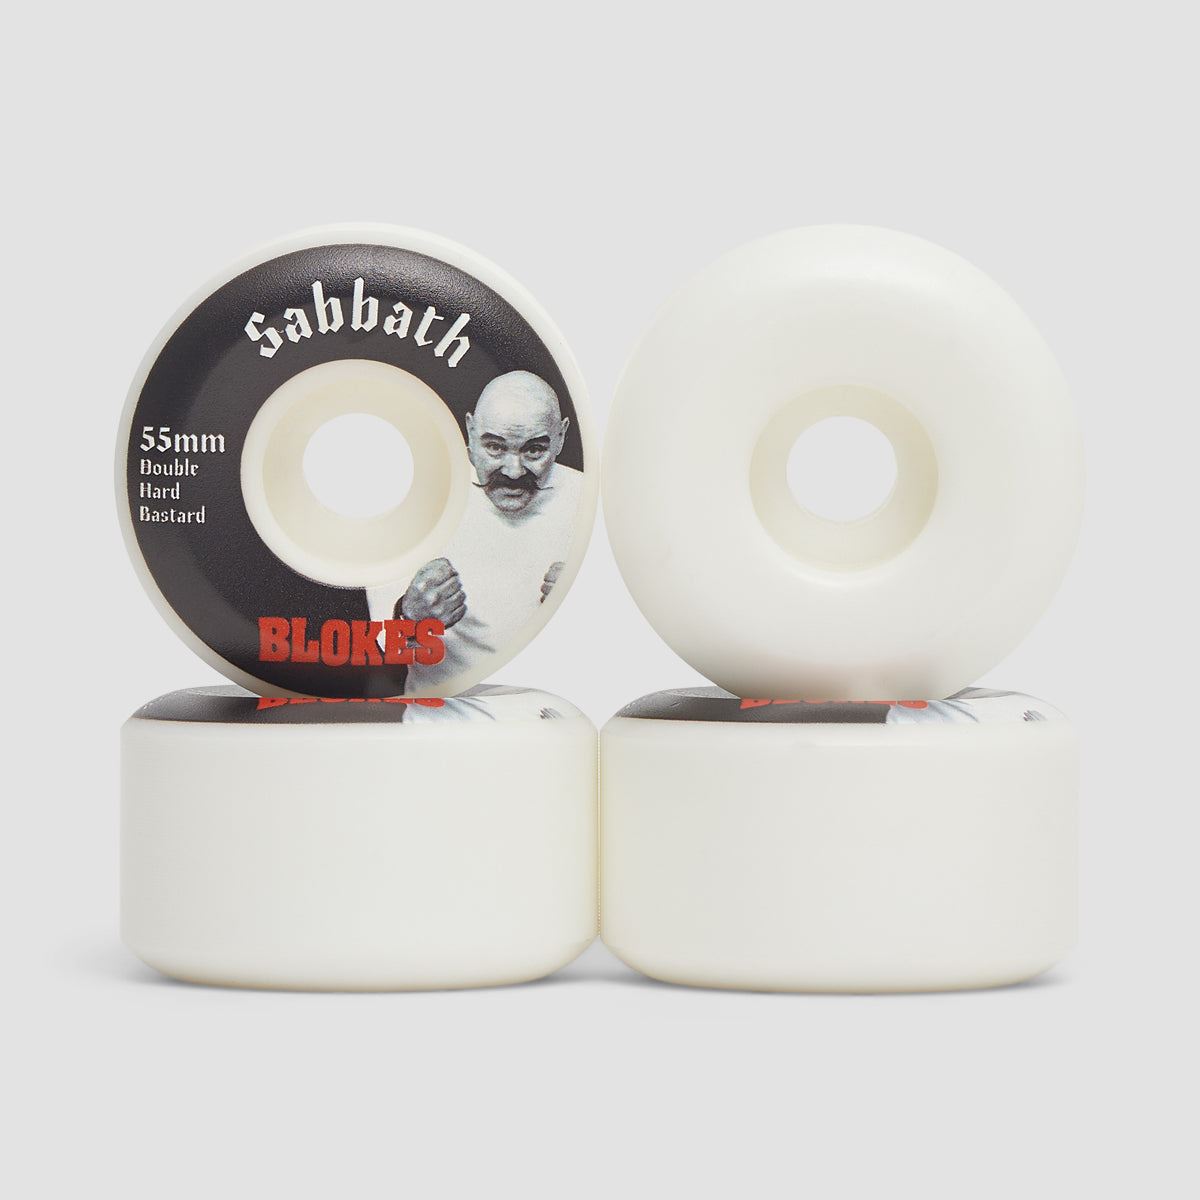 Sabbath Blokes Conical DHB 101A Skateboard Wheels 55mm